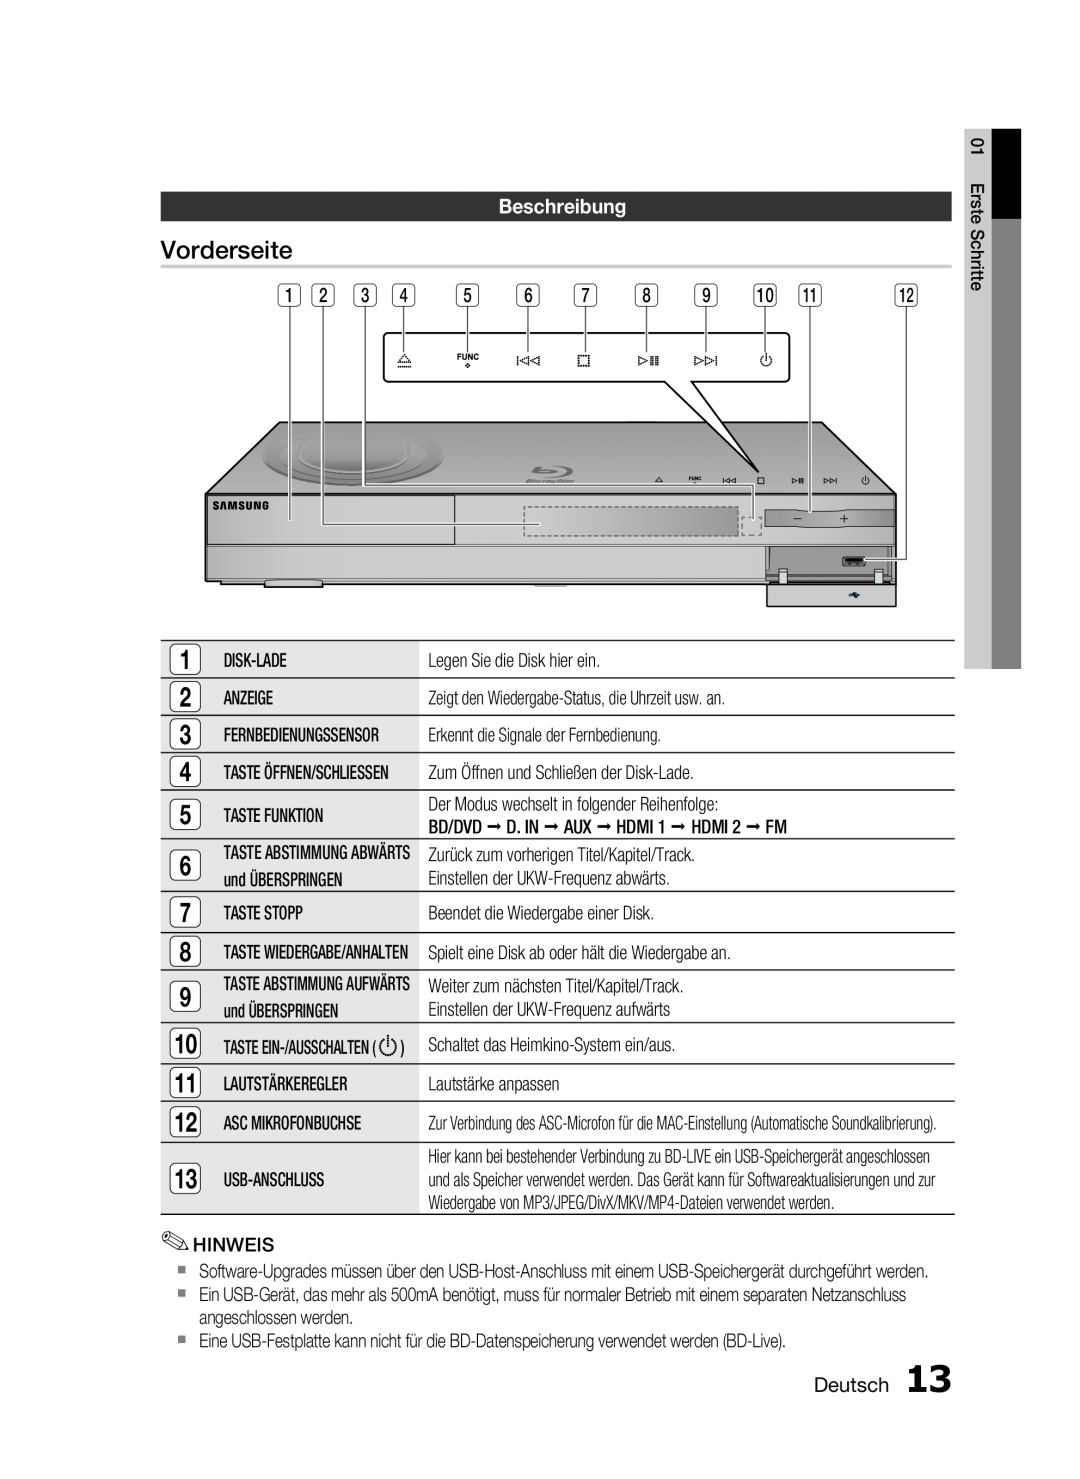 Samsung HT-C6200/XEF manual Vorderseite, Beschreibung, Deutsch 